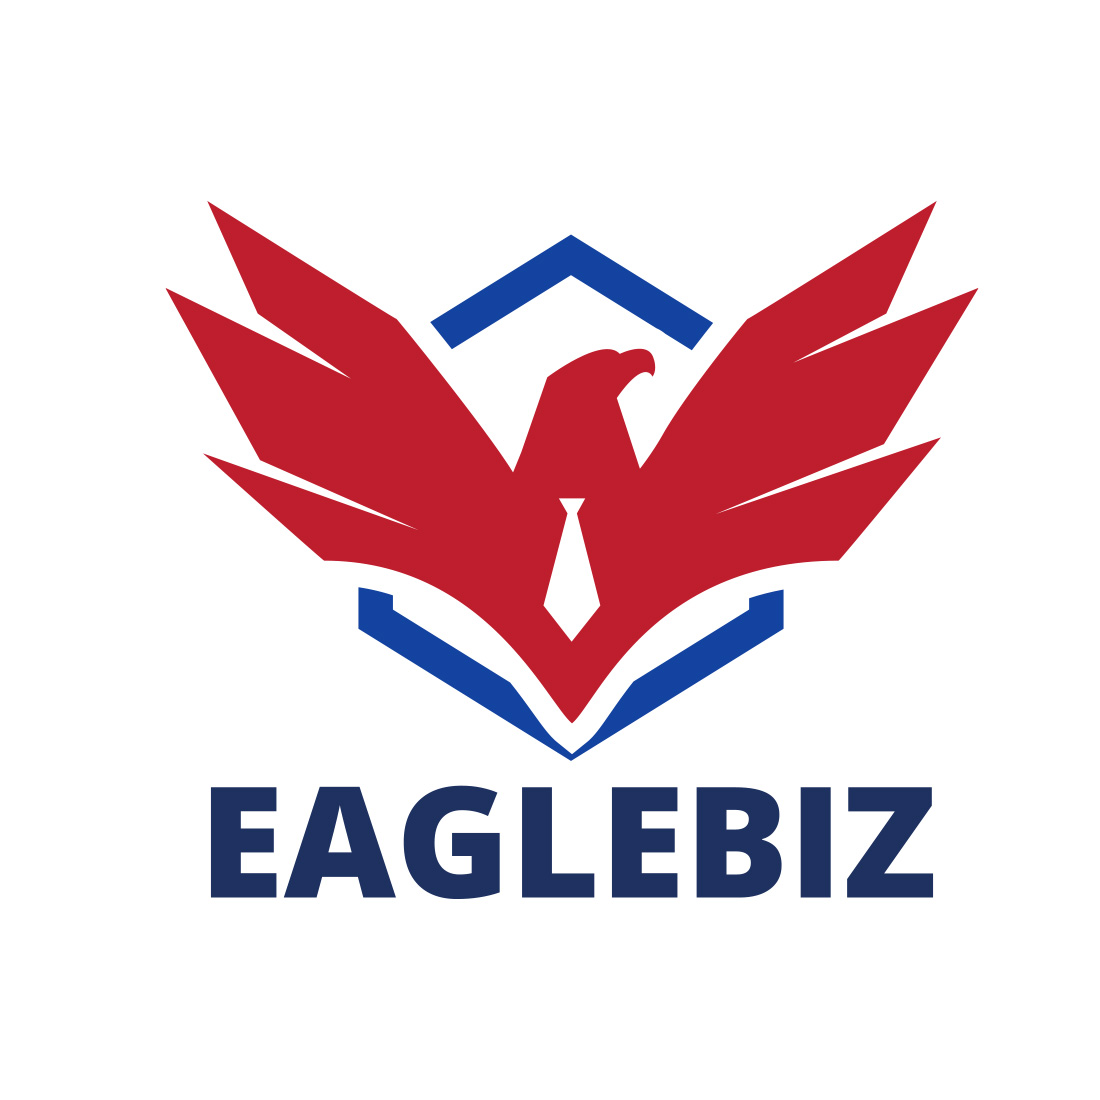 Eaglebiz logo design cover image.